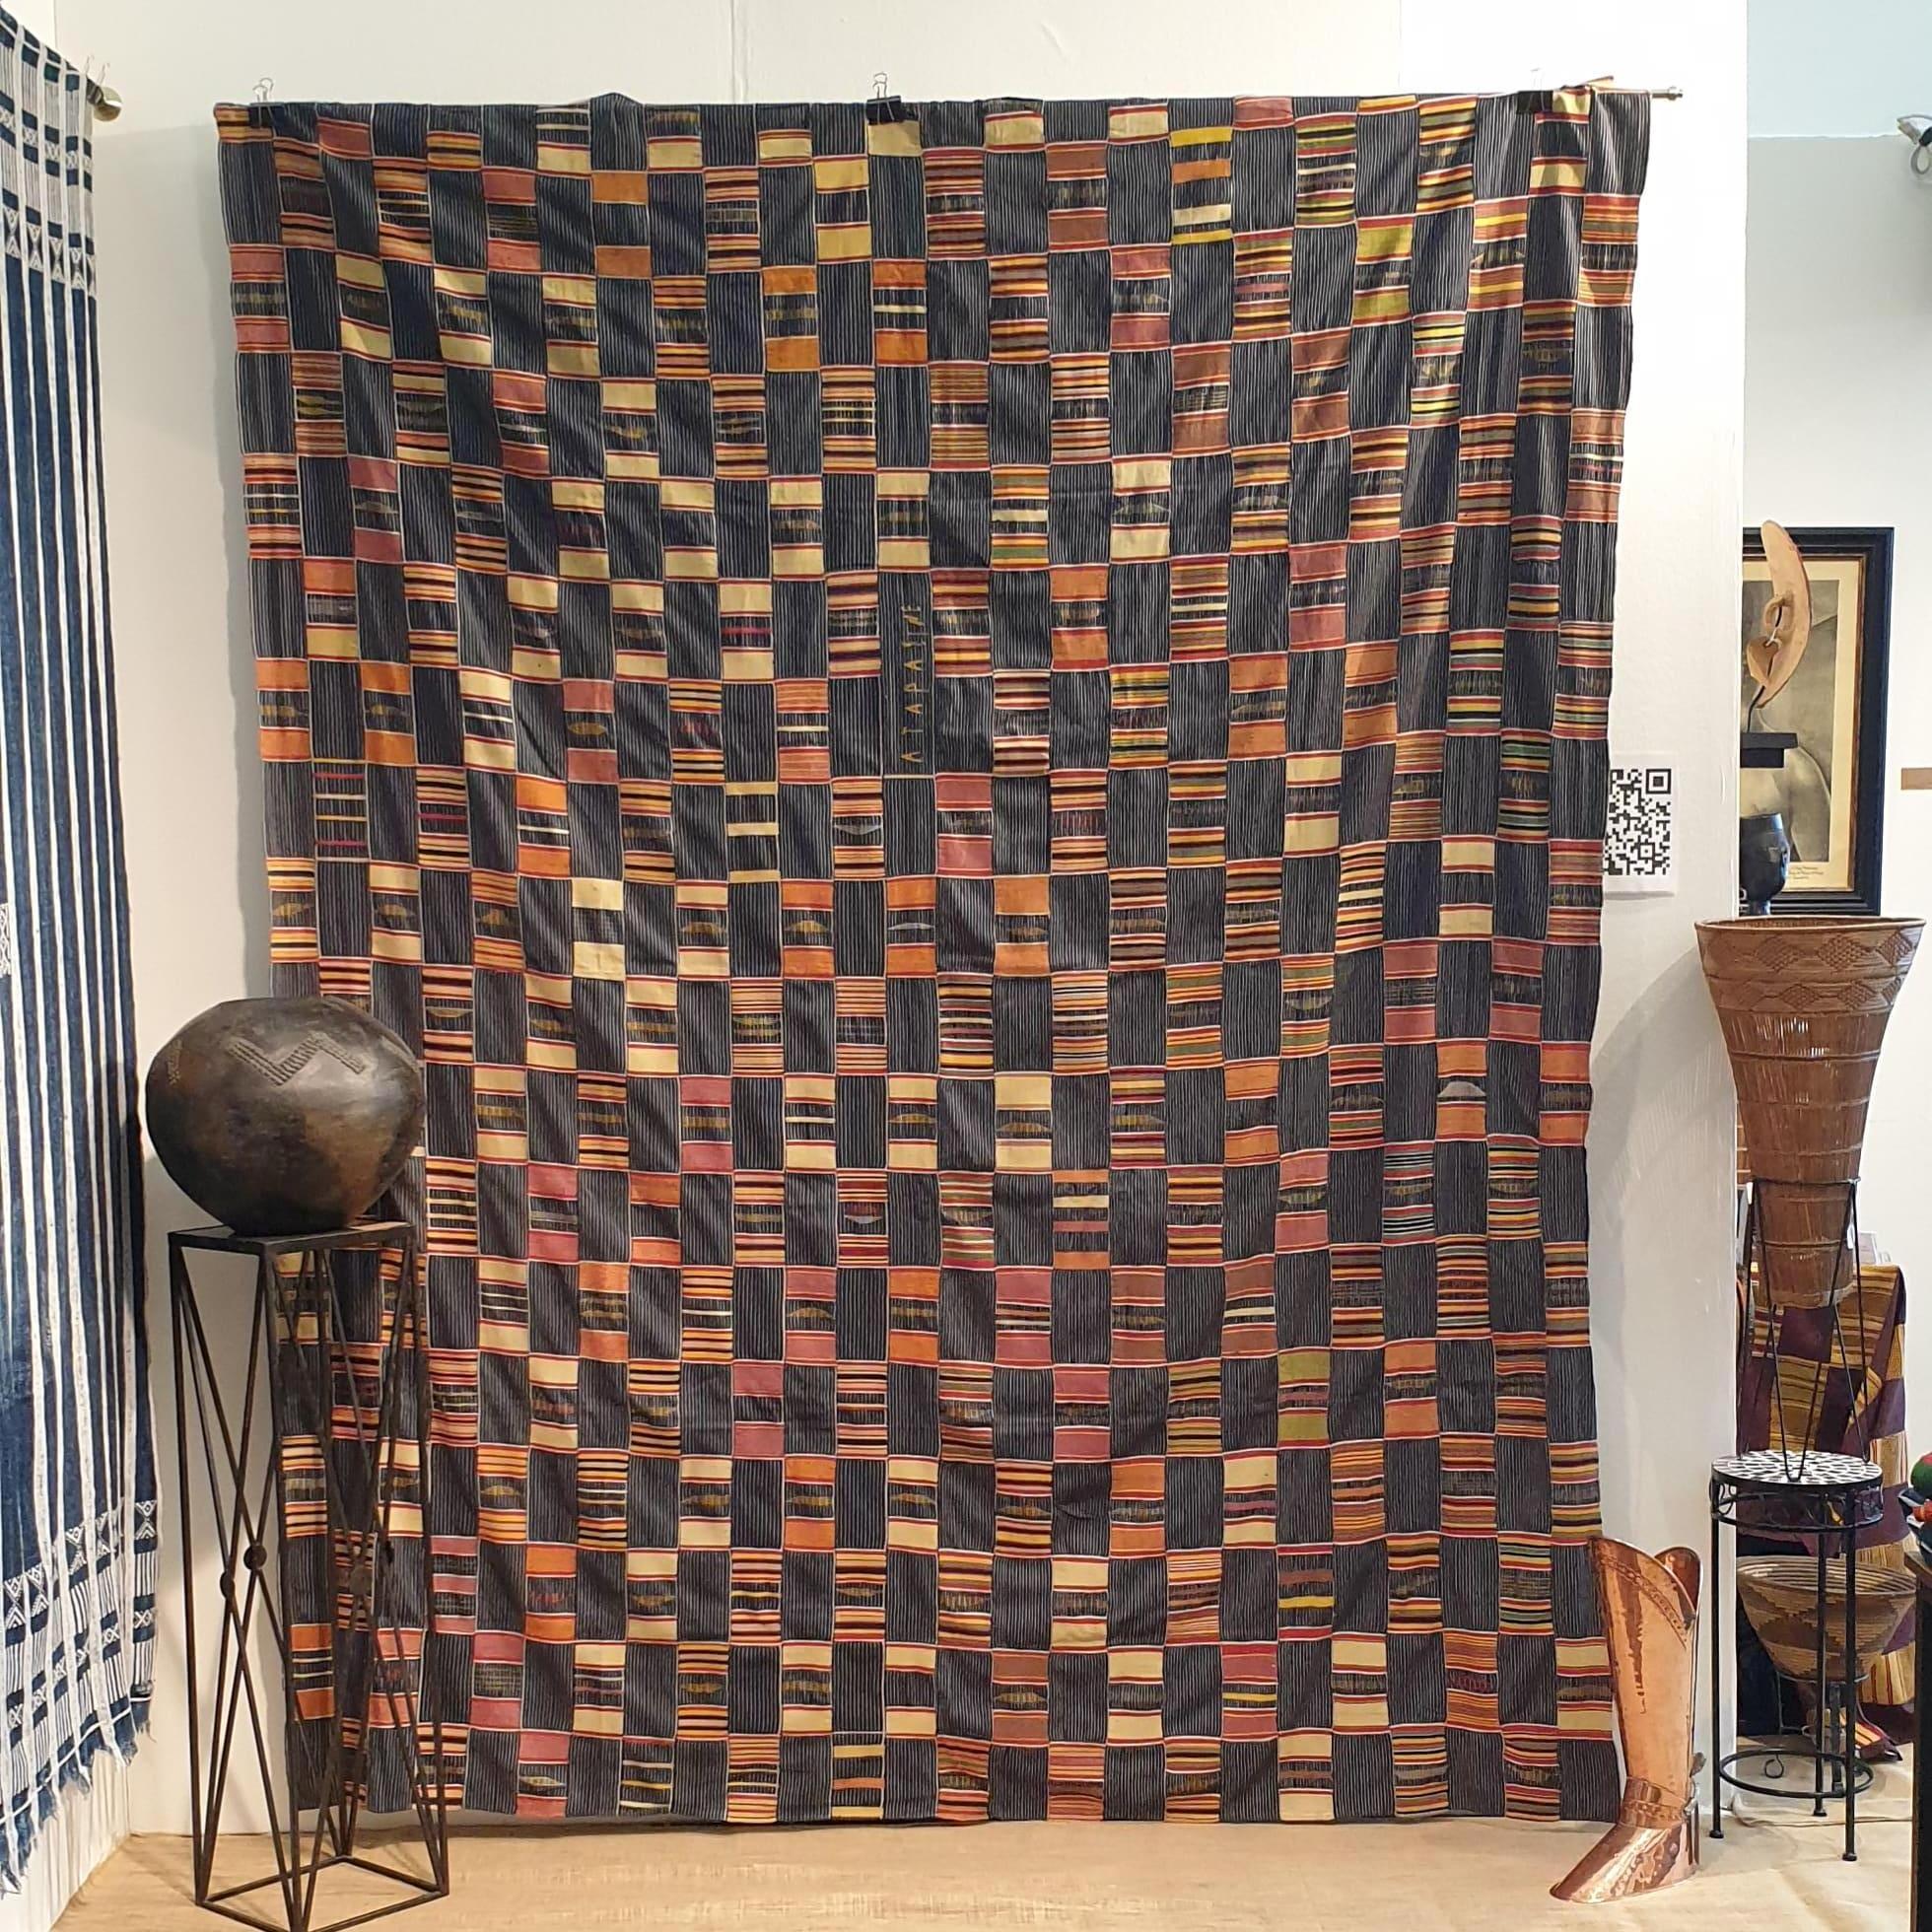 Il s'agit d'une belle pièce de textile Kente du peuple Ewe de la région de Volta au Ghana. Tissé à partir de coton filé à la main et de teintures naturelles. Il s'agit d'une étoffe de prestige portée par un aîné de haut rang du peuple Ewe. Le motif